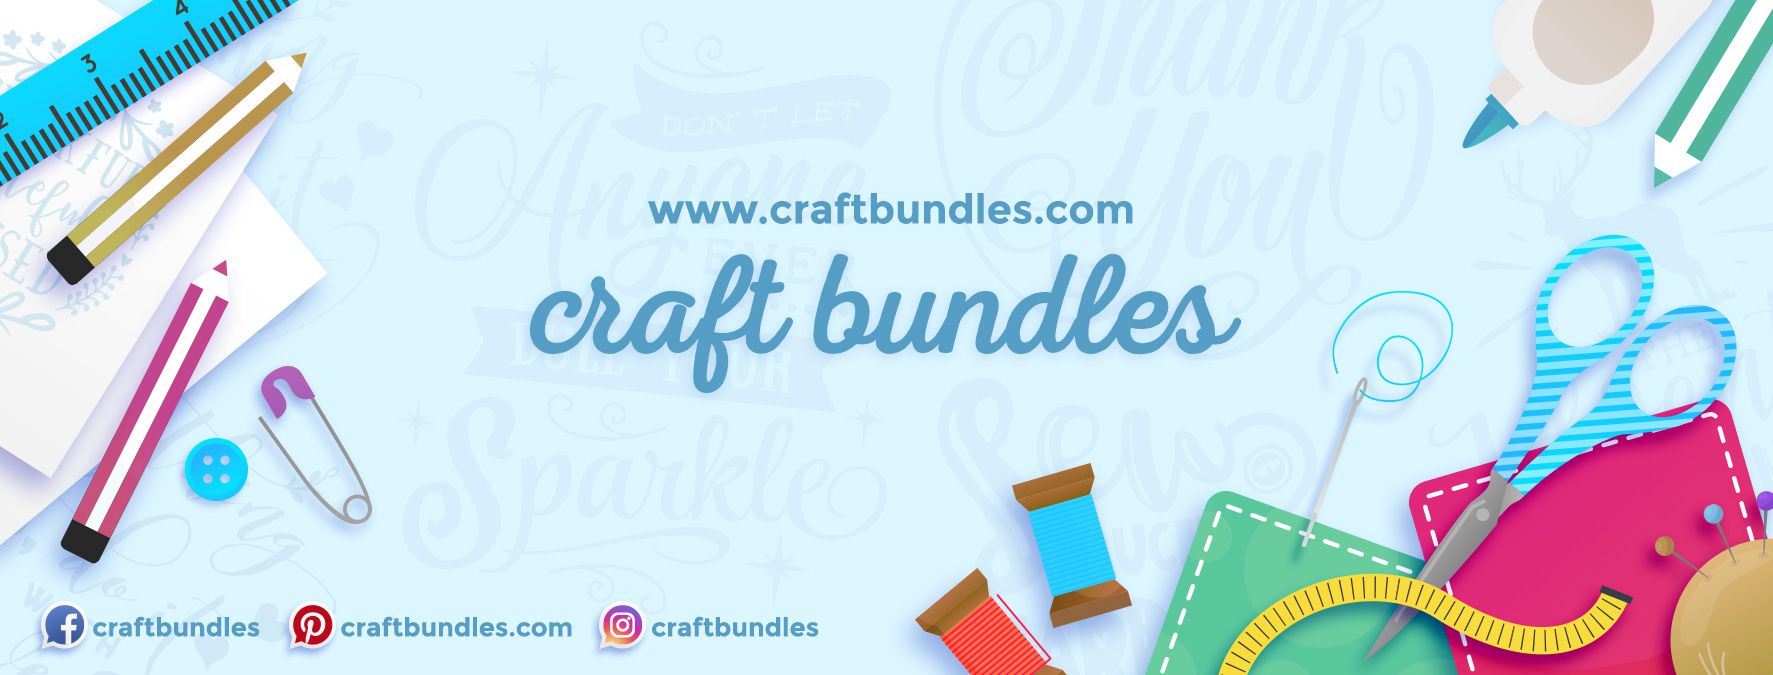 Free Craft Resources And Bundles From CraftBundles.com